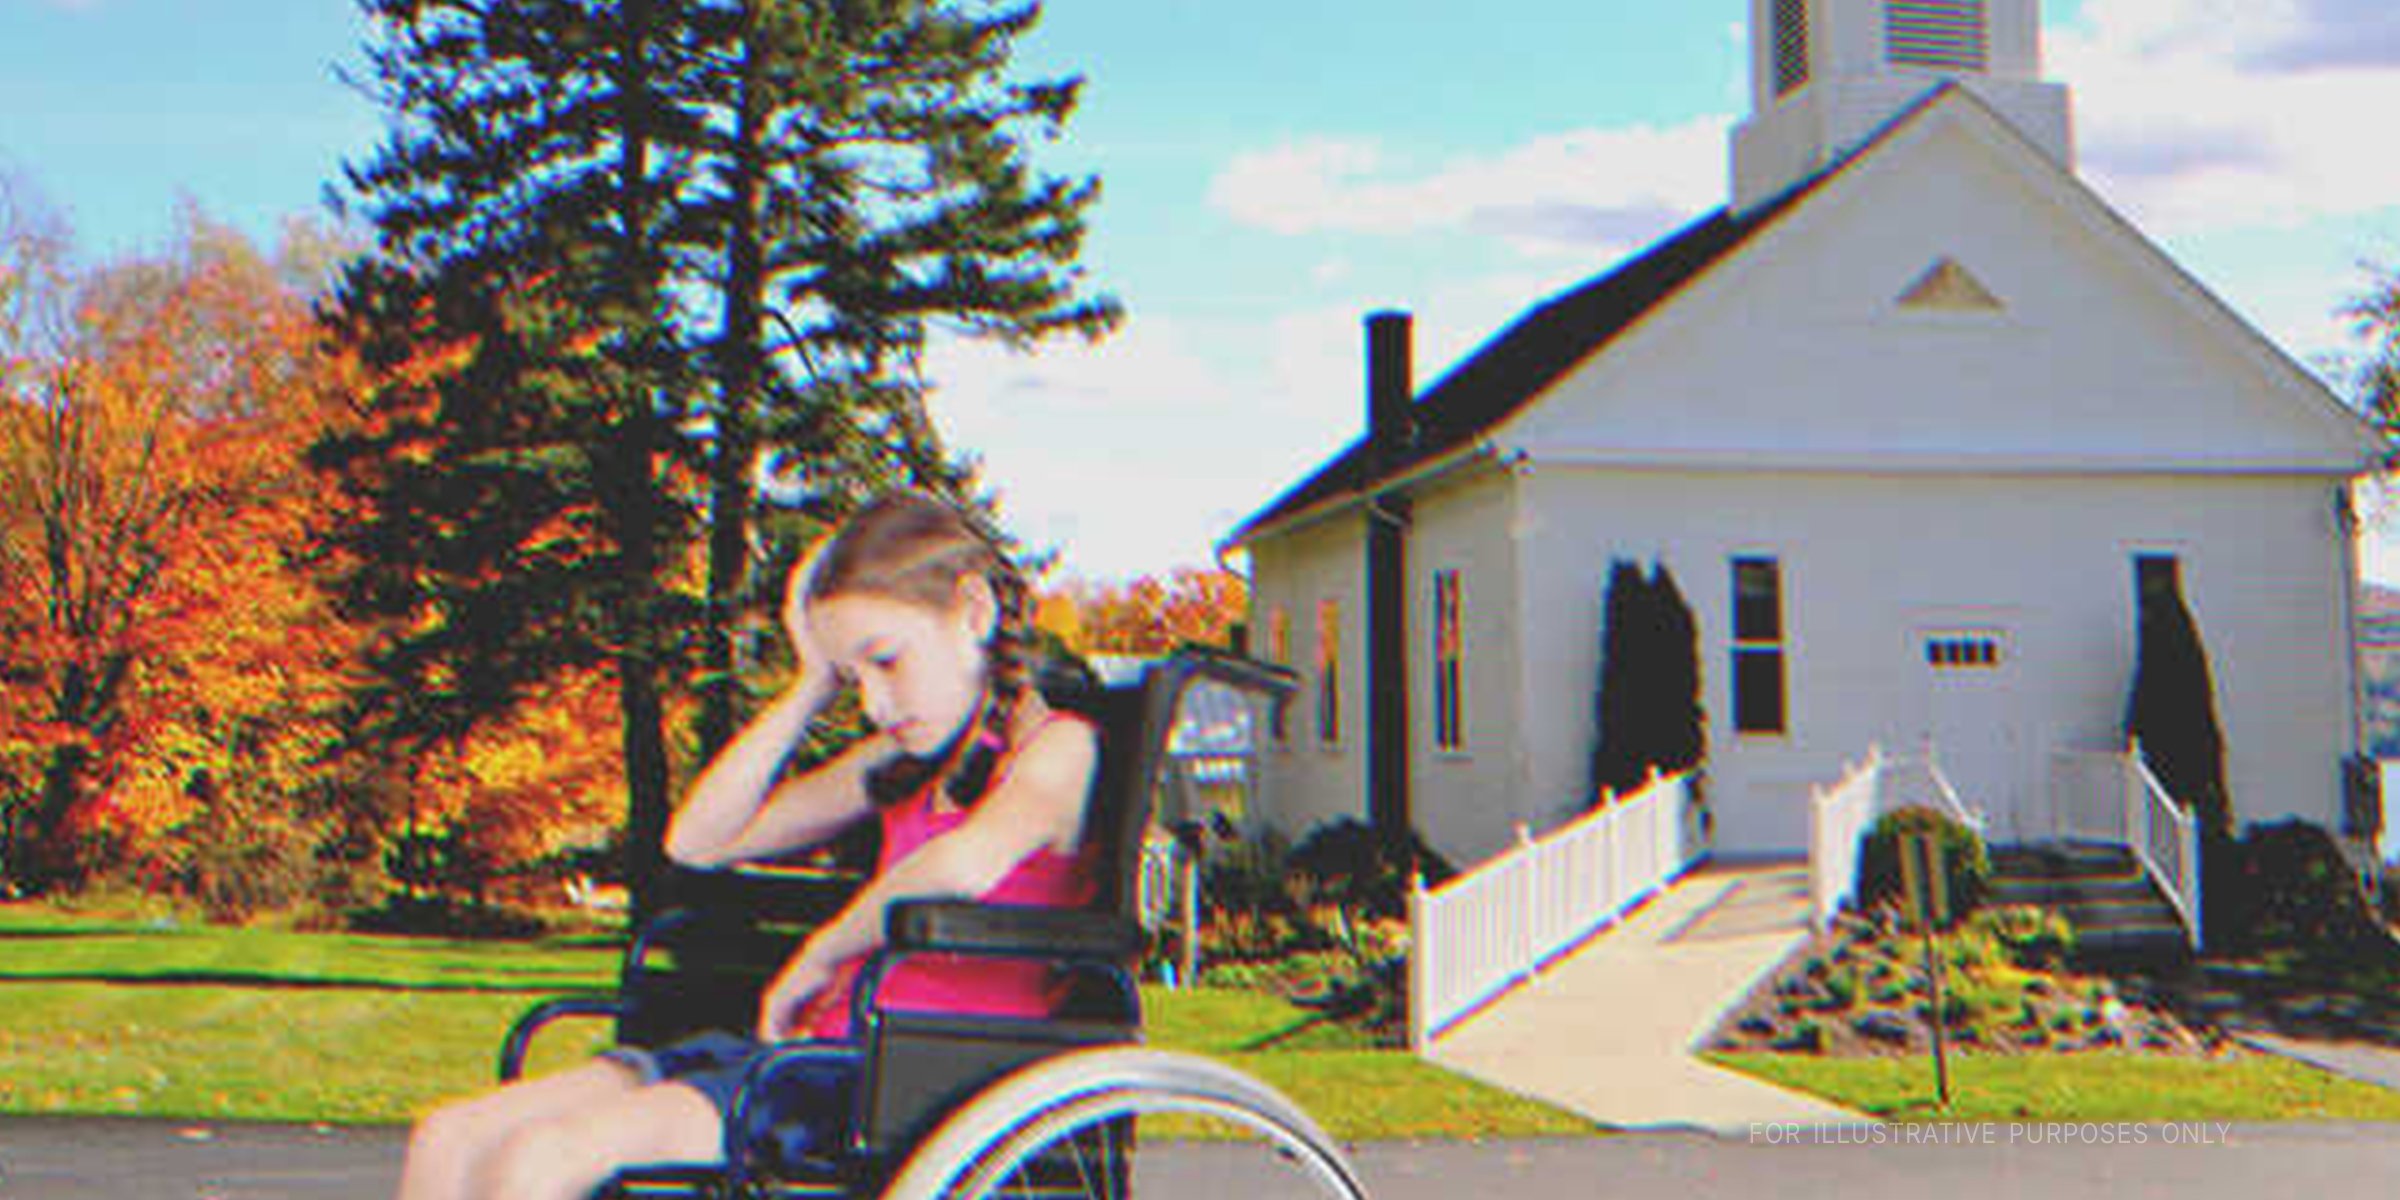 Une fille en fauteuil roulant devant une église | Source : Shutterstock